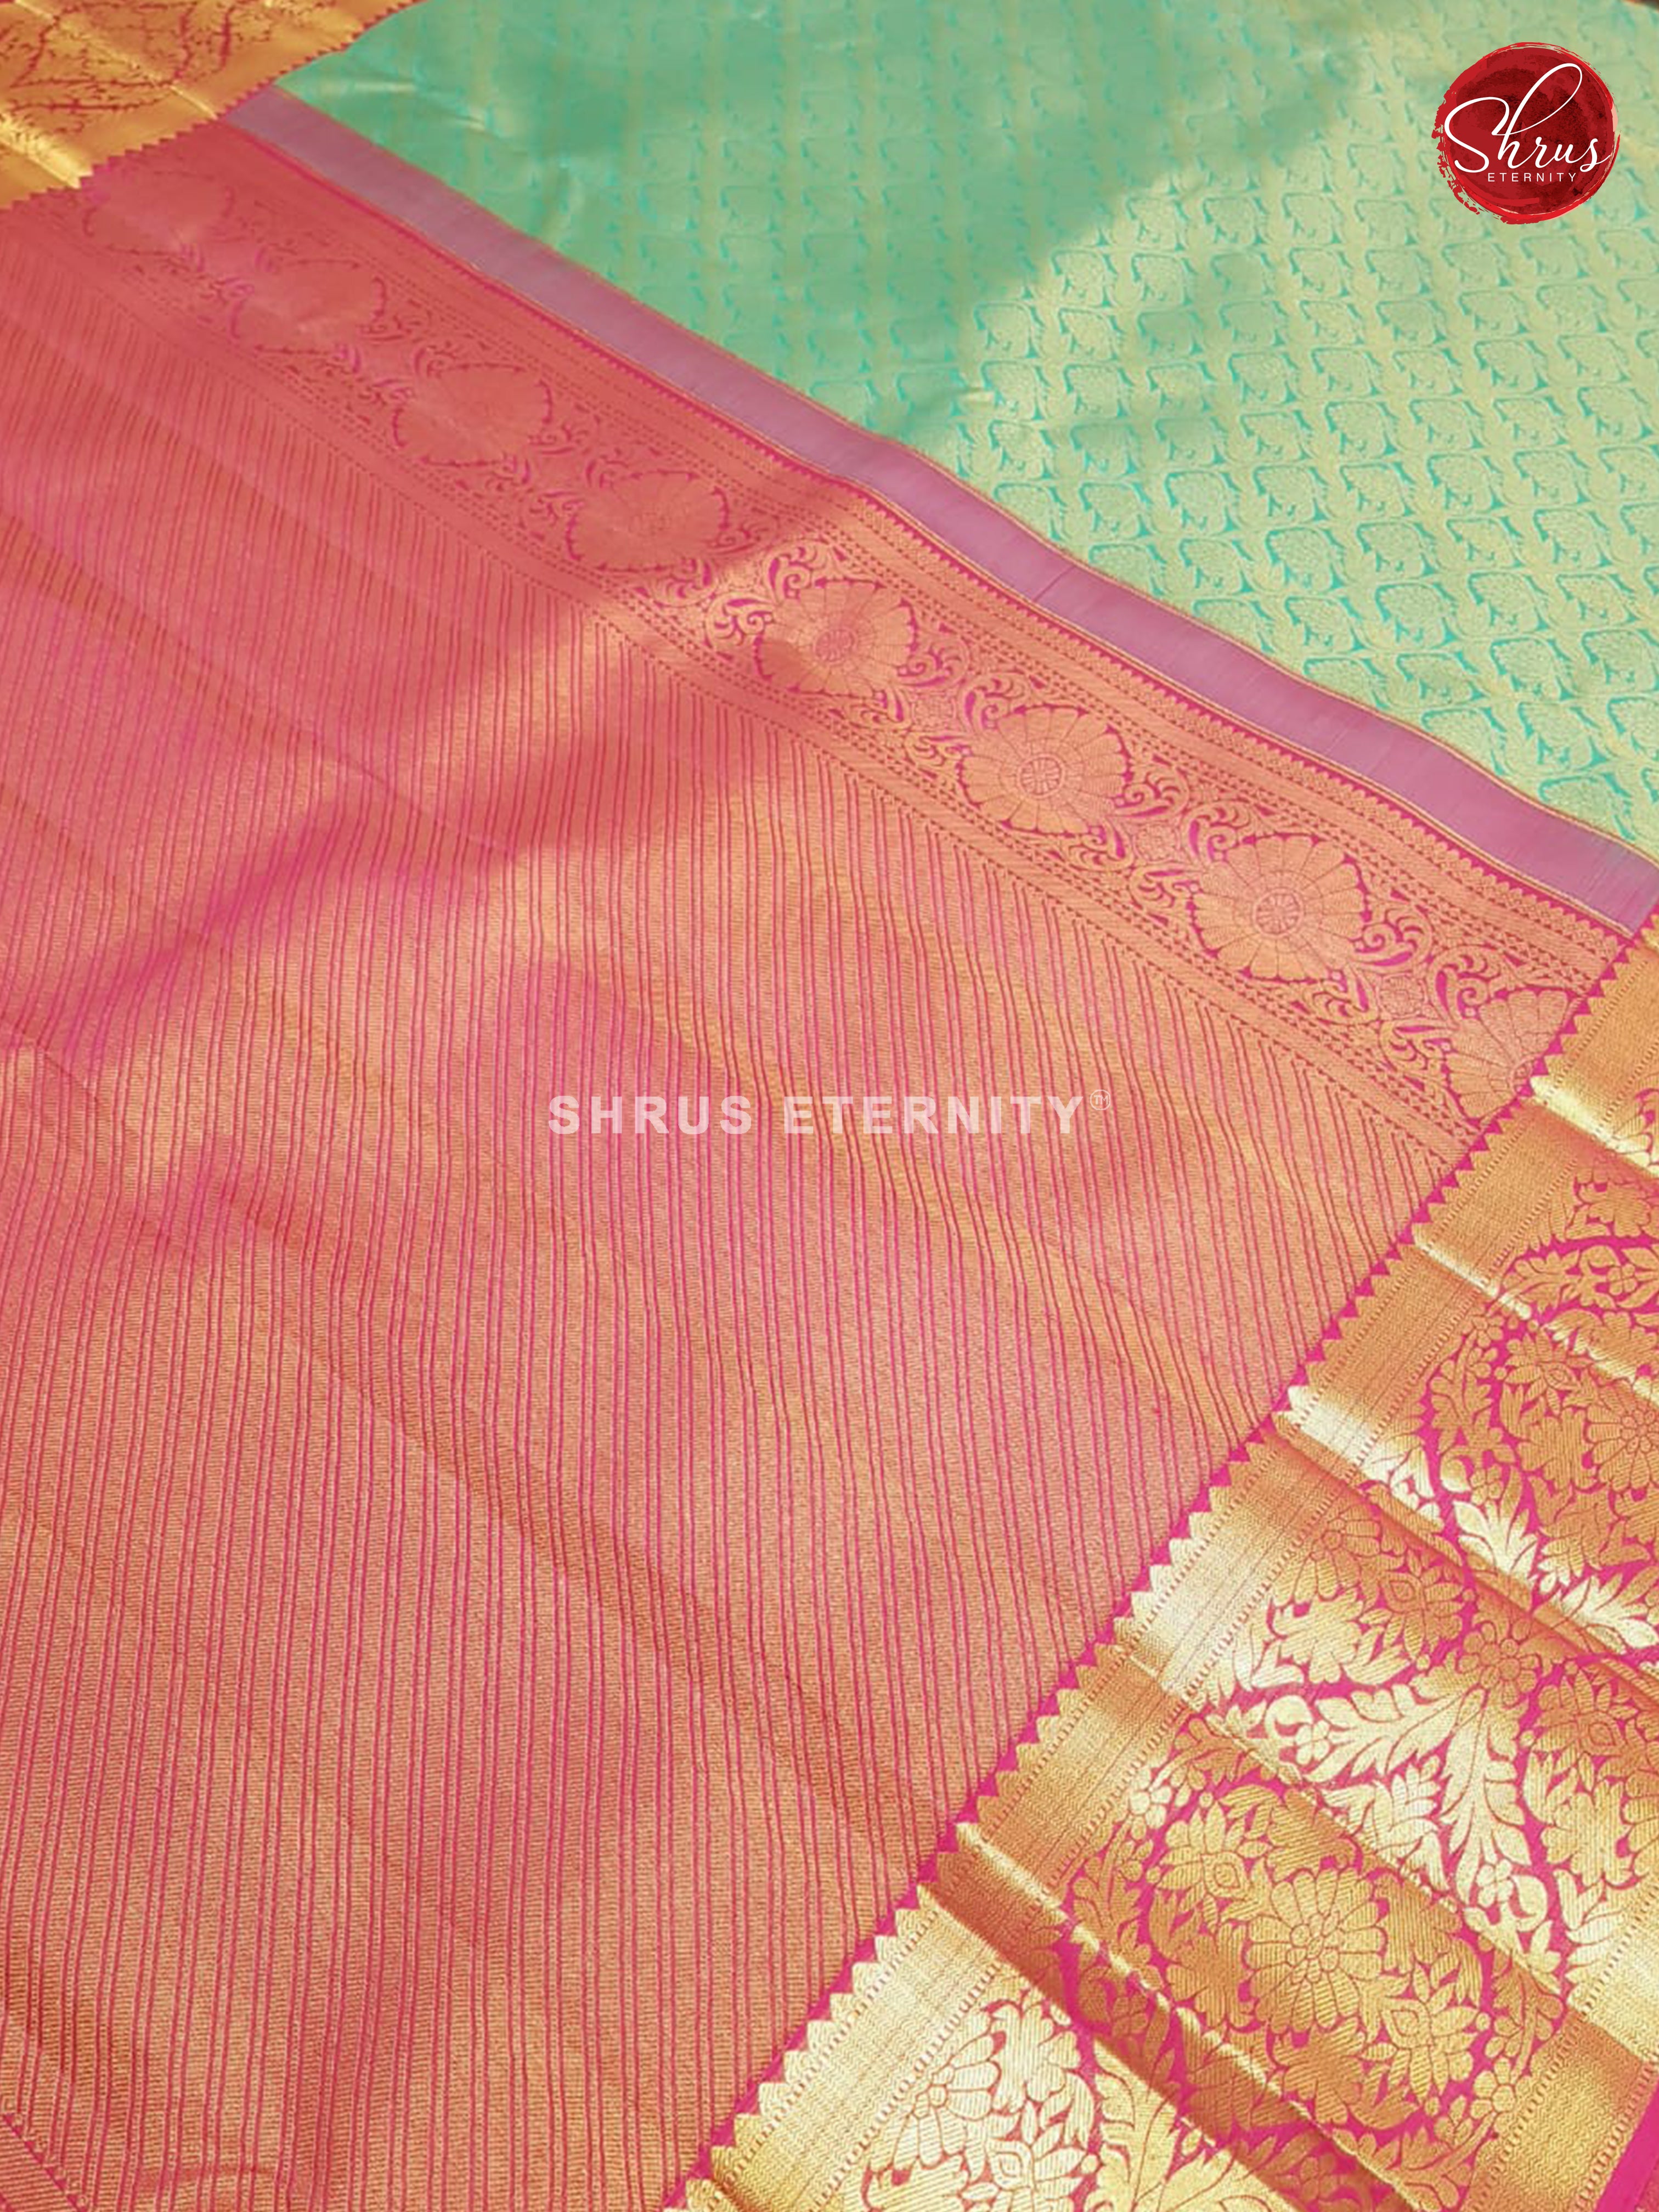 Teal Green & Pink - Kanchipuram Silk - Shop on ShrusEternity.com